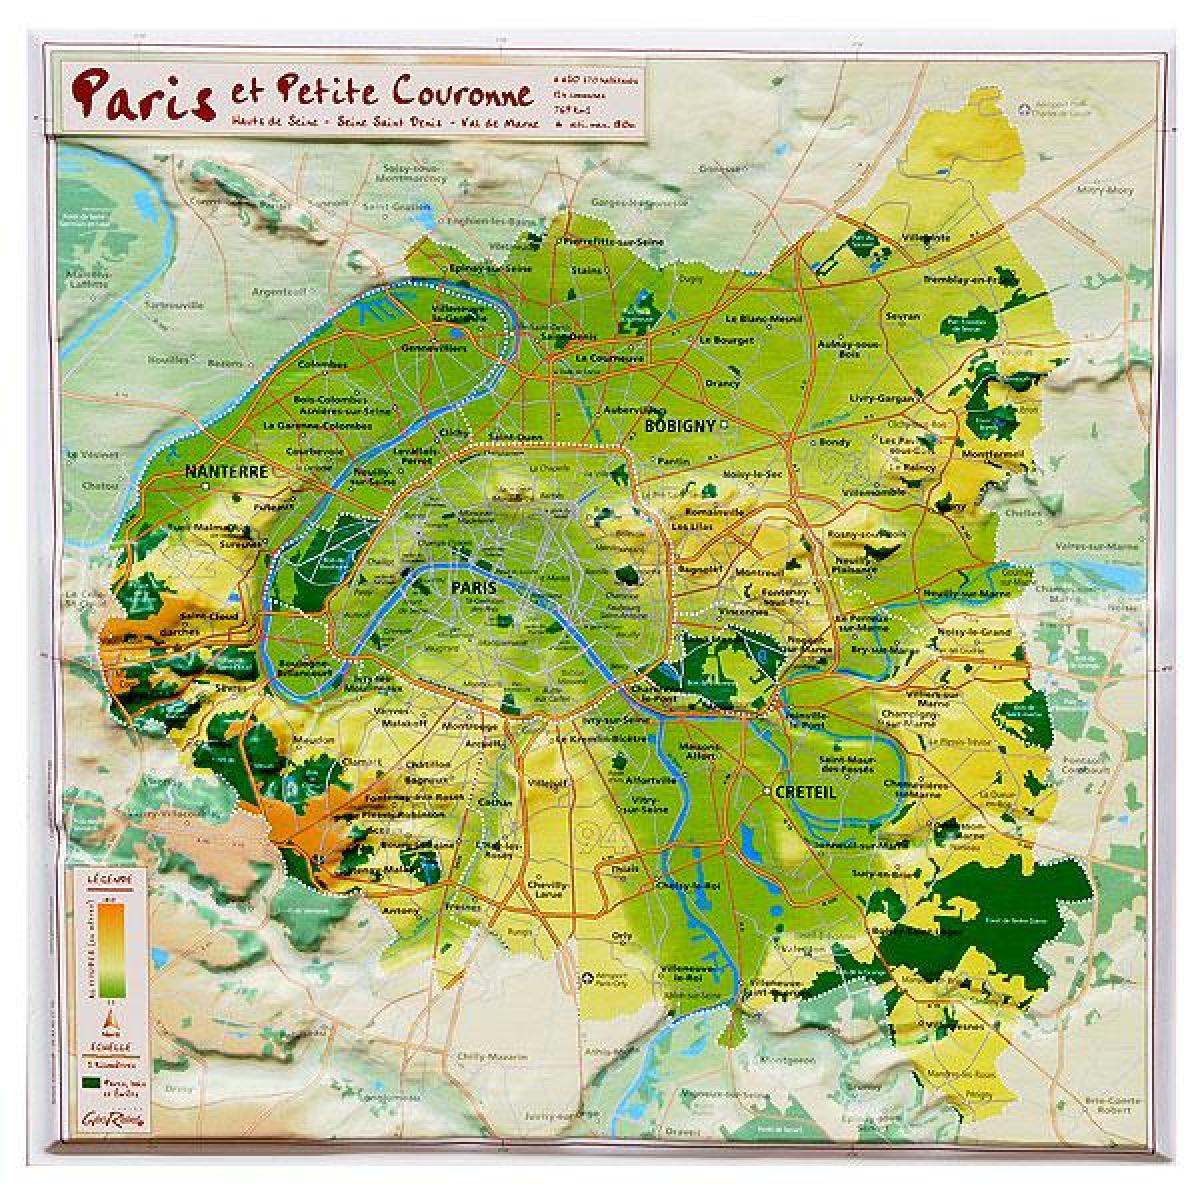 Ռելիեֆի քարտեզ Փարիզ